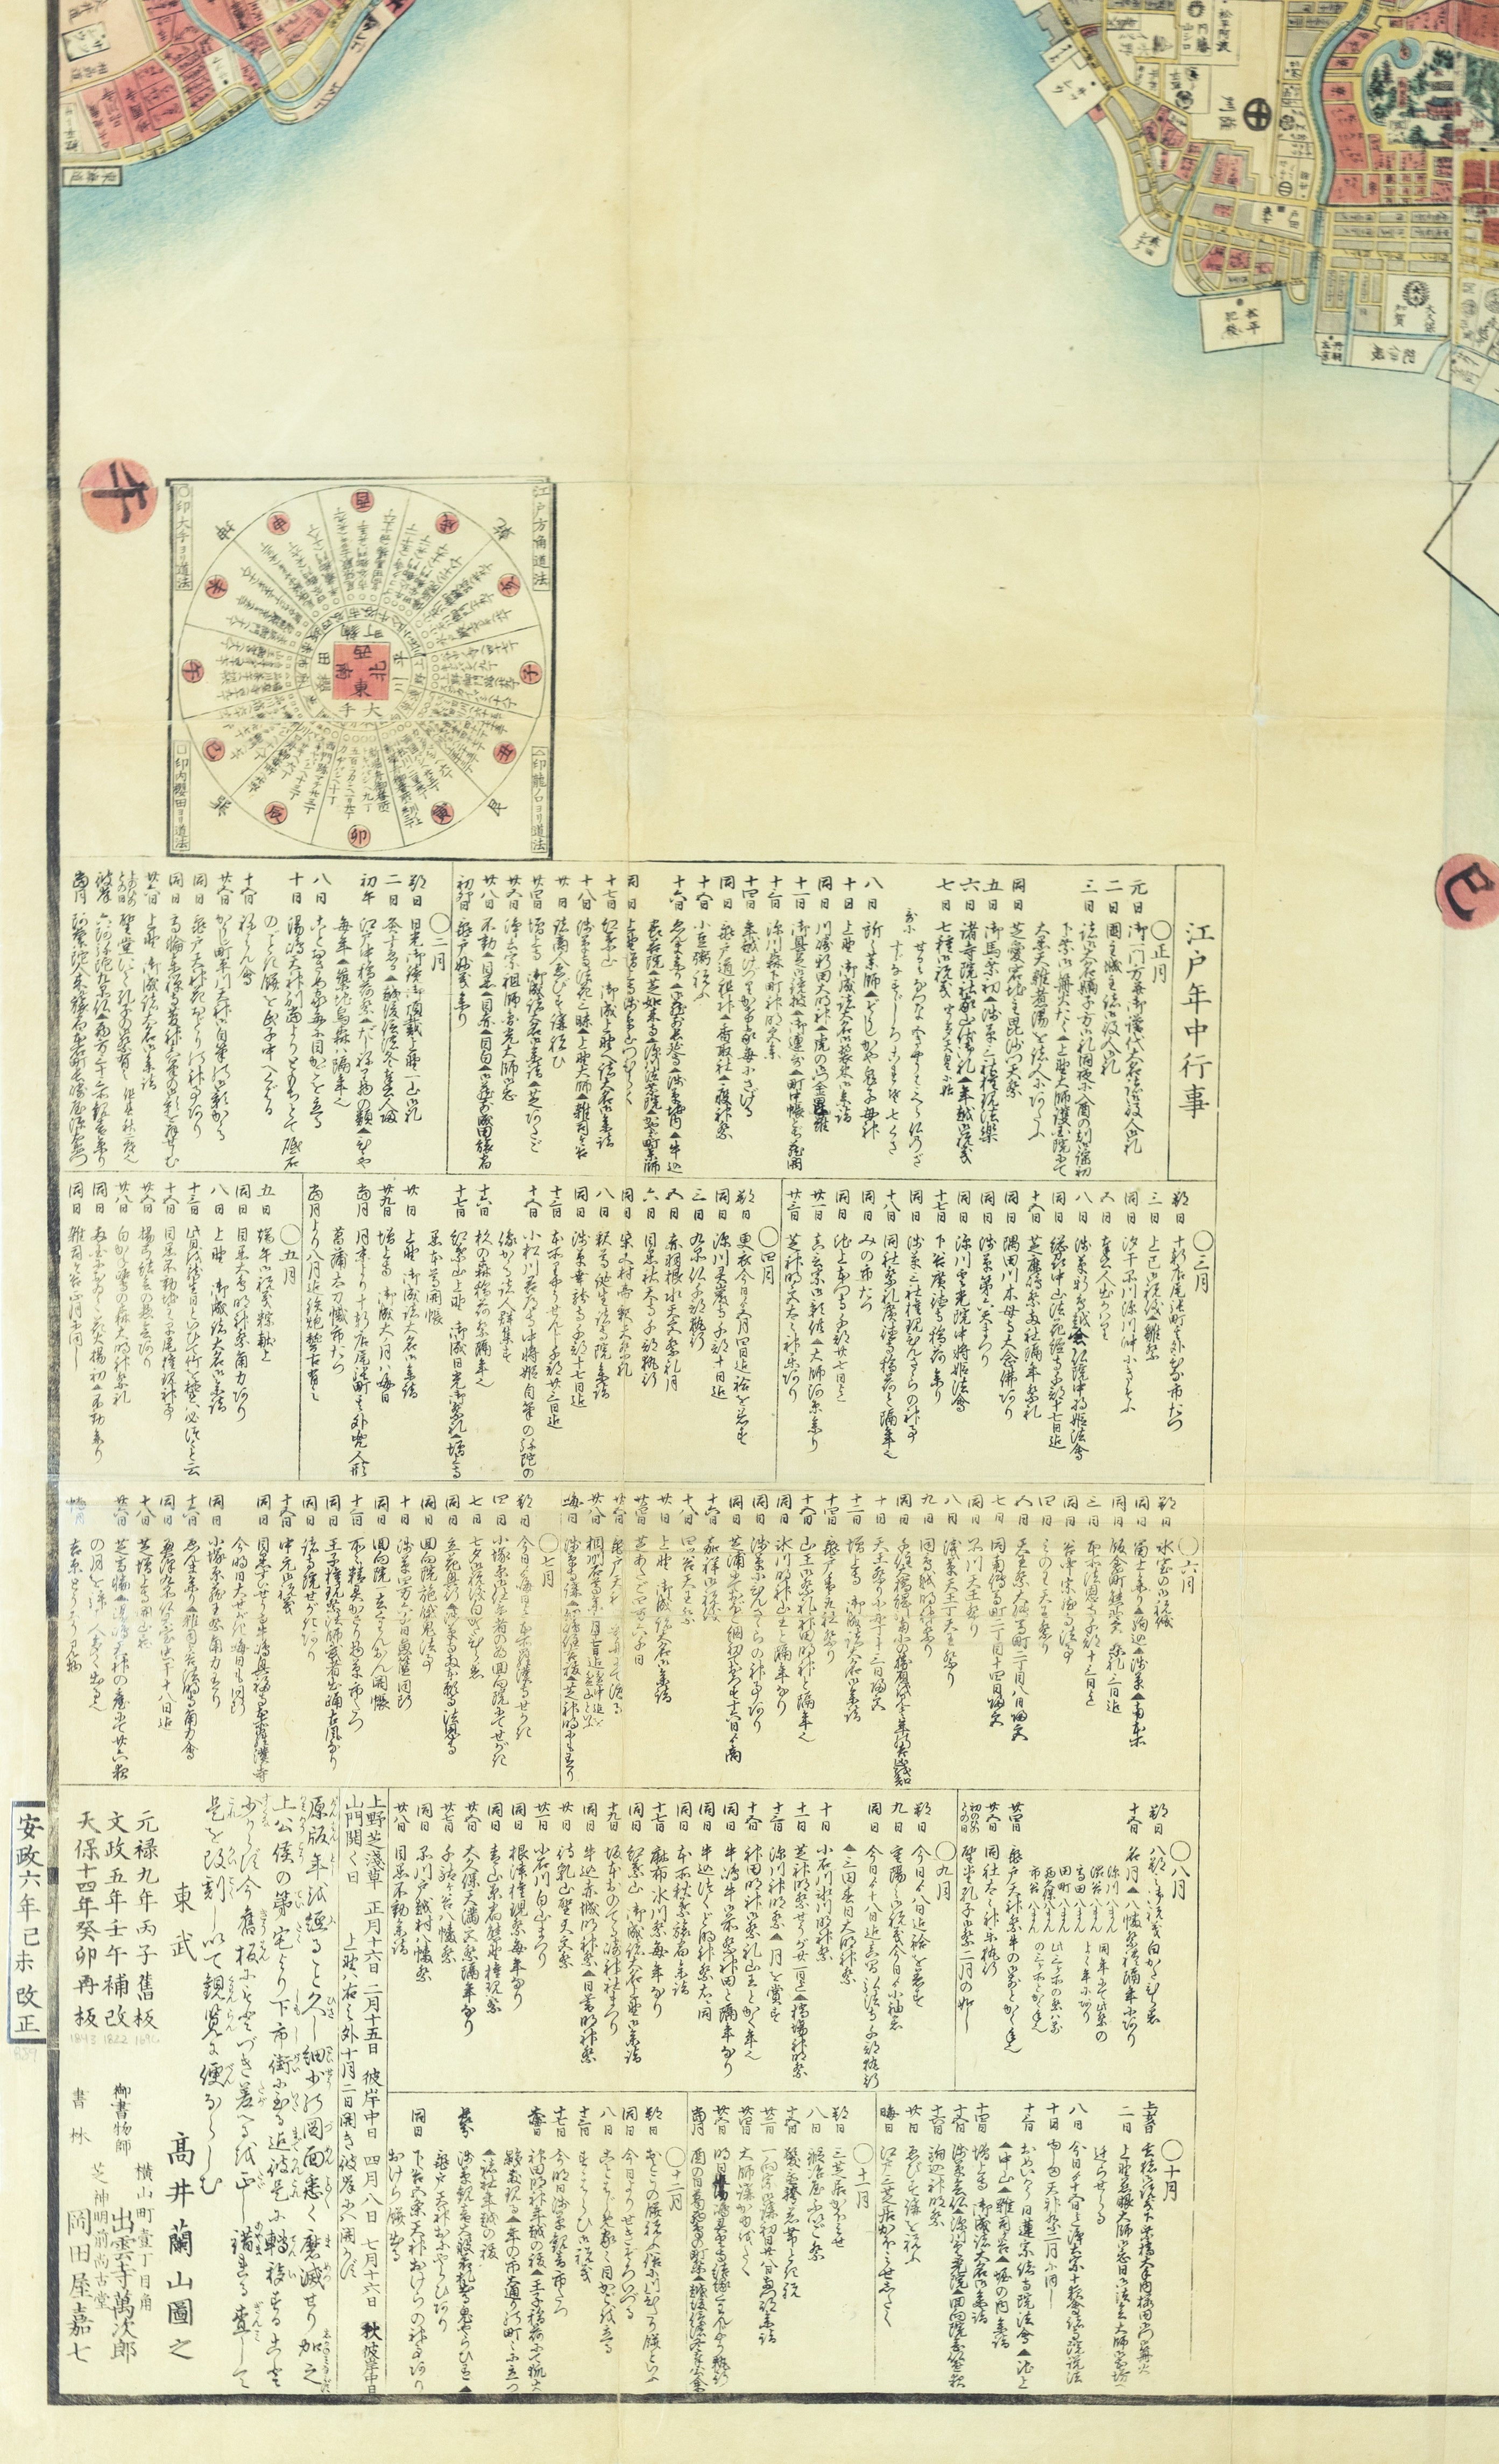 TAKAI RANZAN, Ansei kaisei no Edo oezu, Tokyo 1859. [Map of Tokyo 